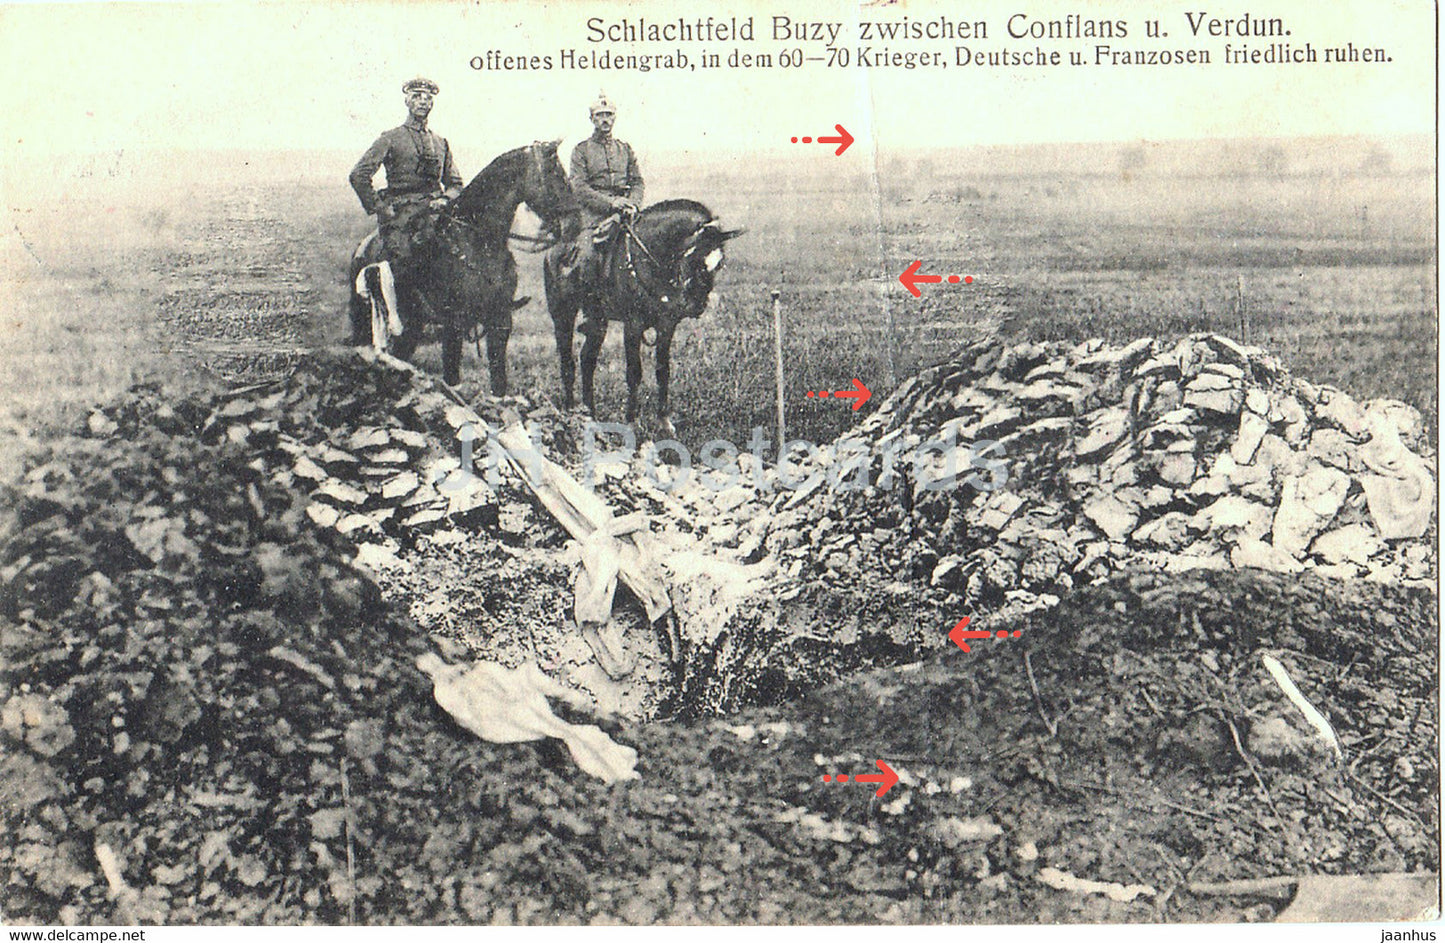 Schlachtfeld Buzy zwischen Conflans u Verdun - Offenes Heldengrab - Feldpost - old postcard - 1915 - France - used - JH Postcards